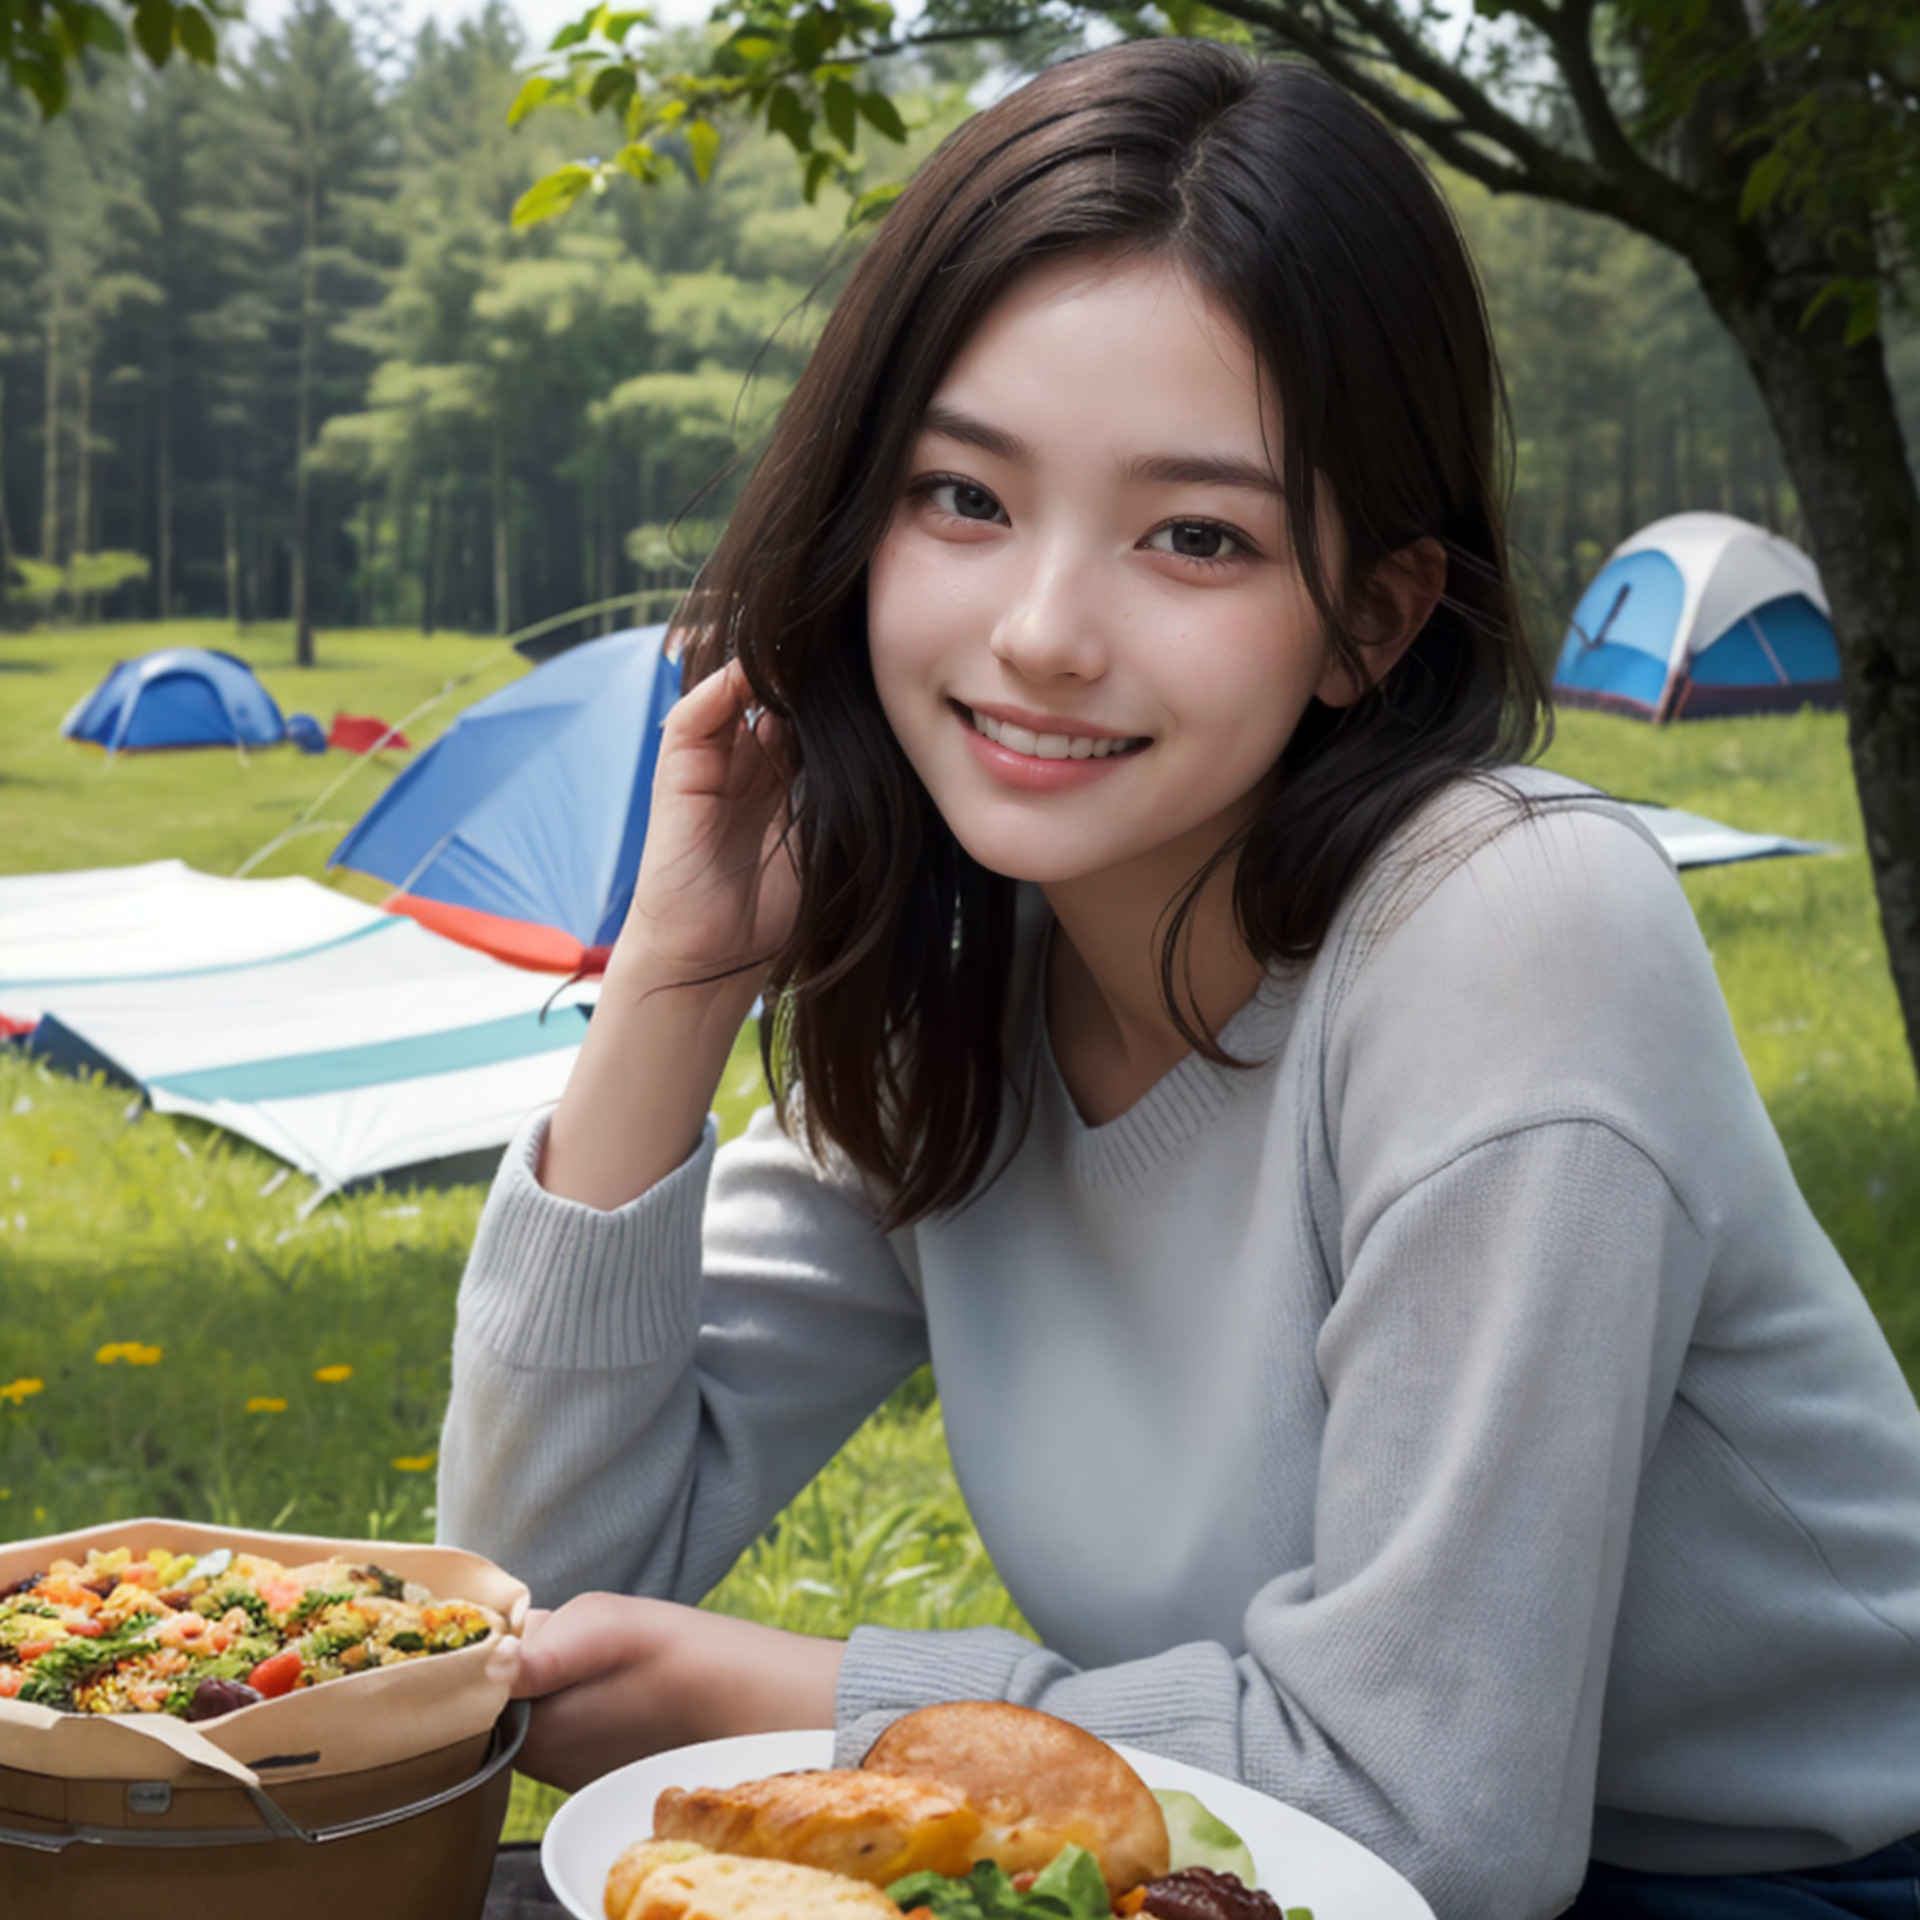 キャンプ場でオシャレなキャンプ飯を食べる女性